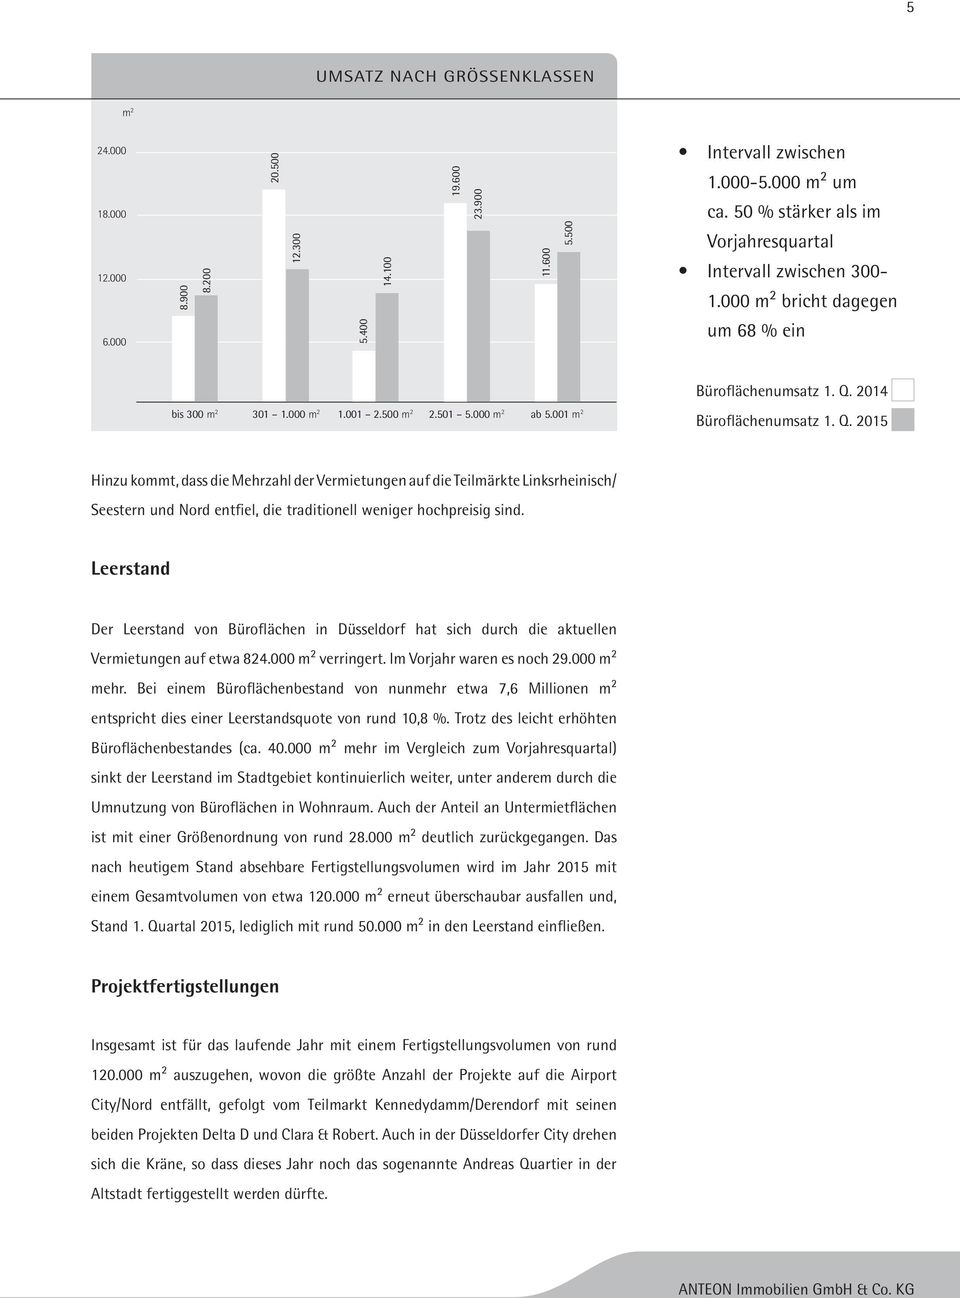 001 m 2 Büroflächenumsatz 1. Q. 2015 Hinzu kommt, dass die Mehrzahl der Vermietungen auf die Teilmärkte Linksrheinisch/ Seestern und Nord entfiel, die traditionell weniger hochpreisig sind.